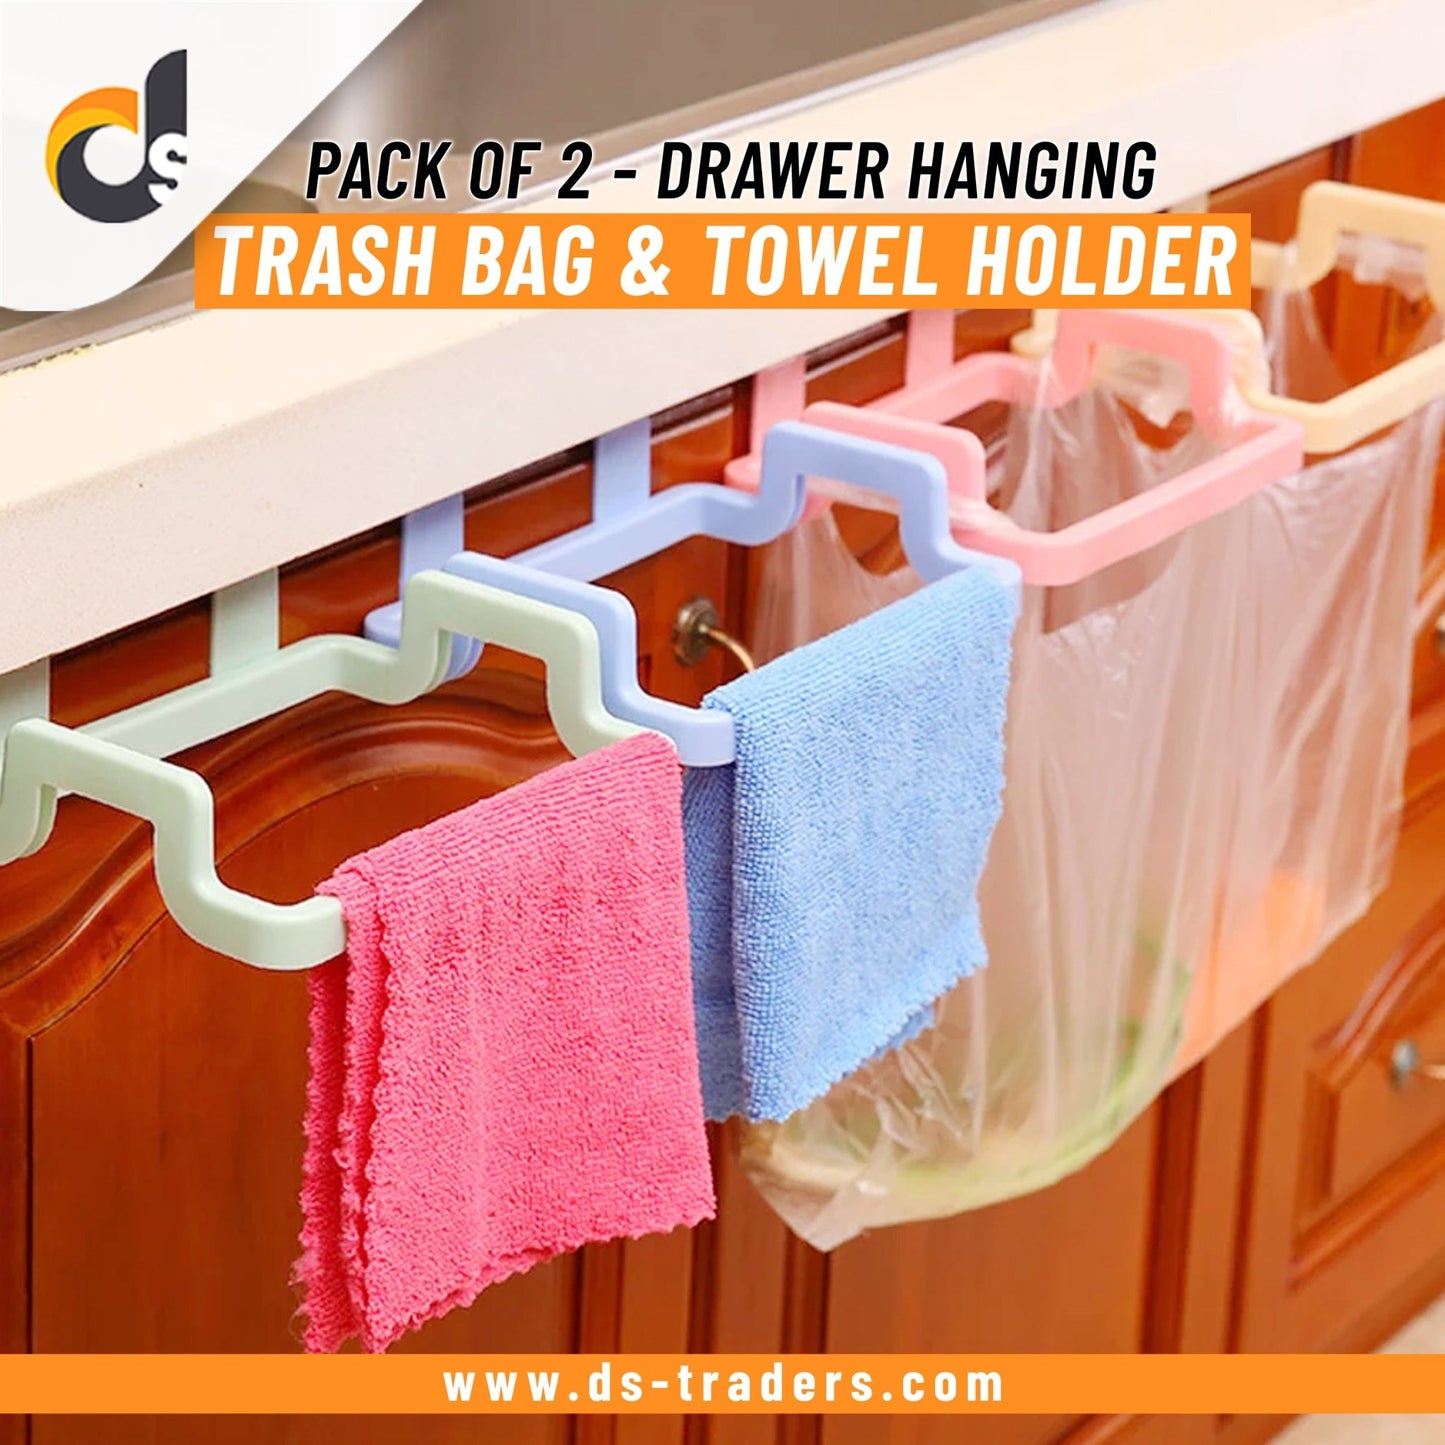 Pack of 2 - Garbage/Trash Bin Bag Holder & Towel Rack For Kitchen Drawer. - DS Traders